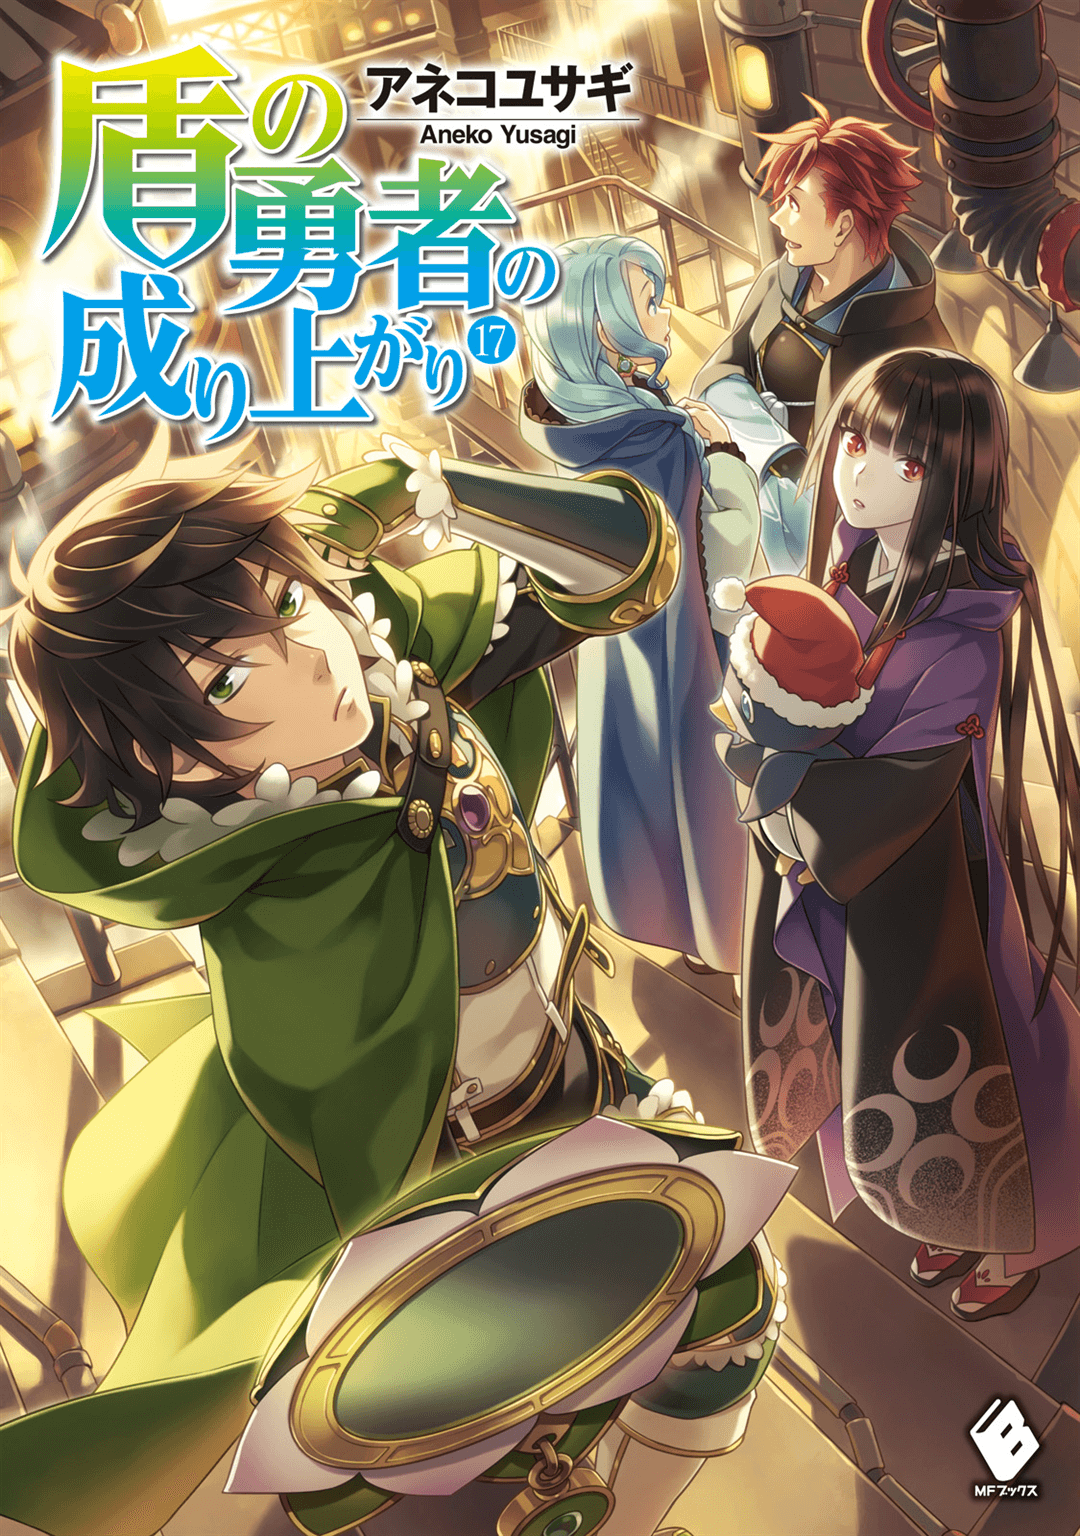 Light Novel Volume 17, The Rising of the Shield Hero Wiki